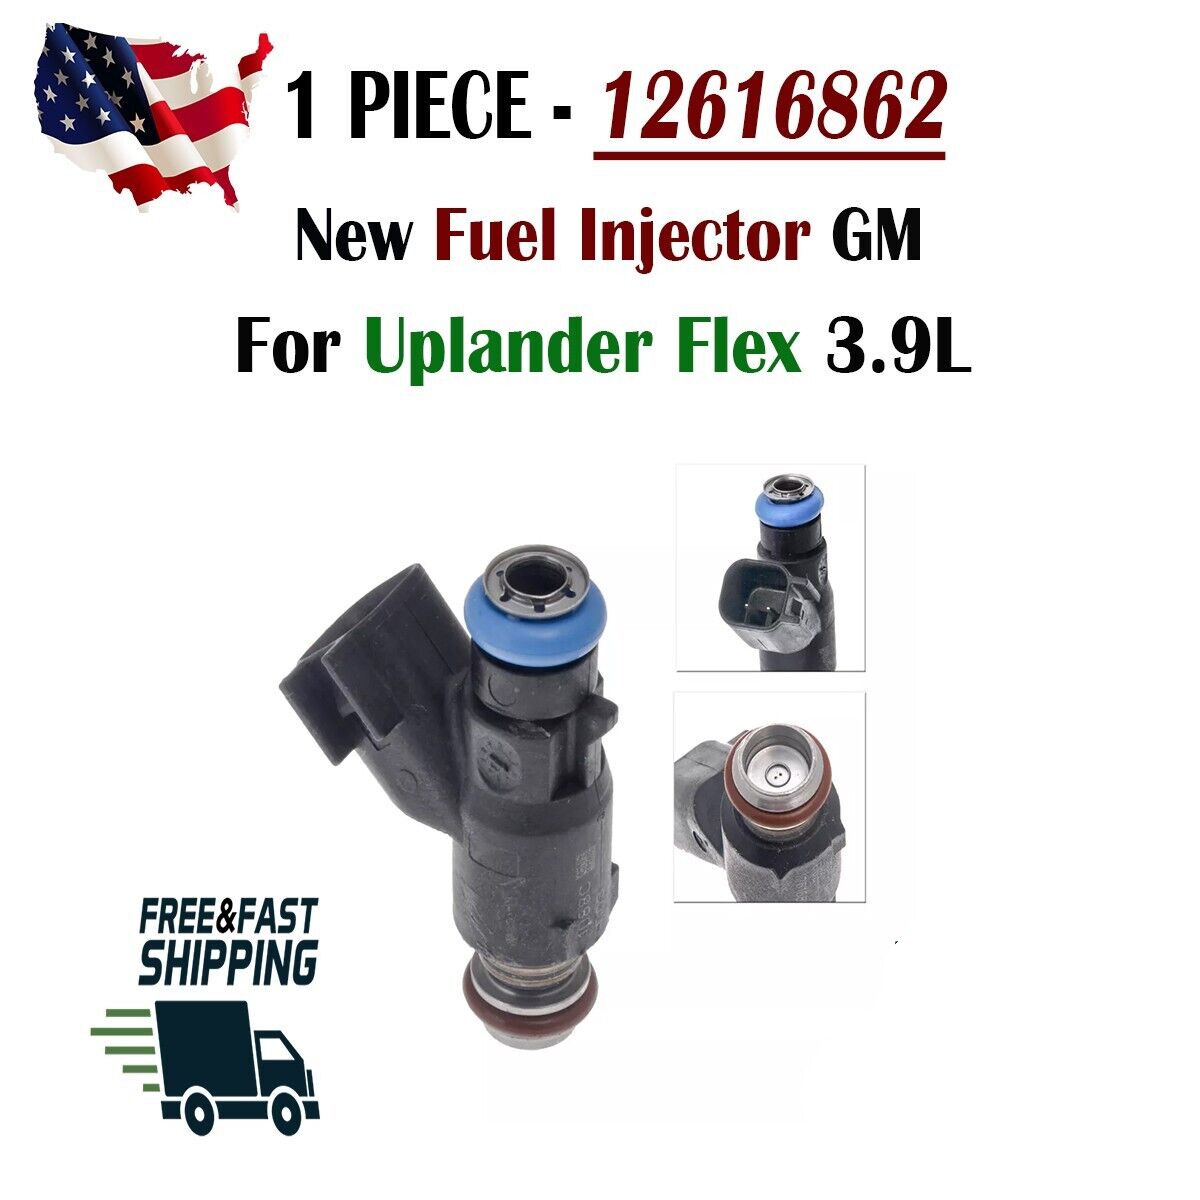 Fuel Injector GM 12616862 For Uplander Flex 3.9L